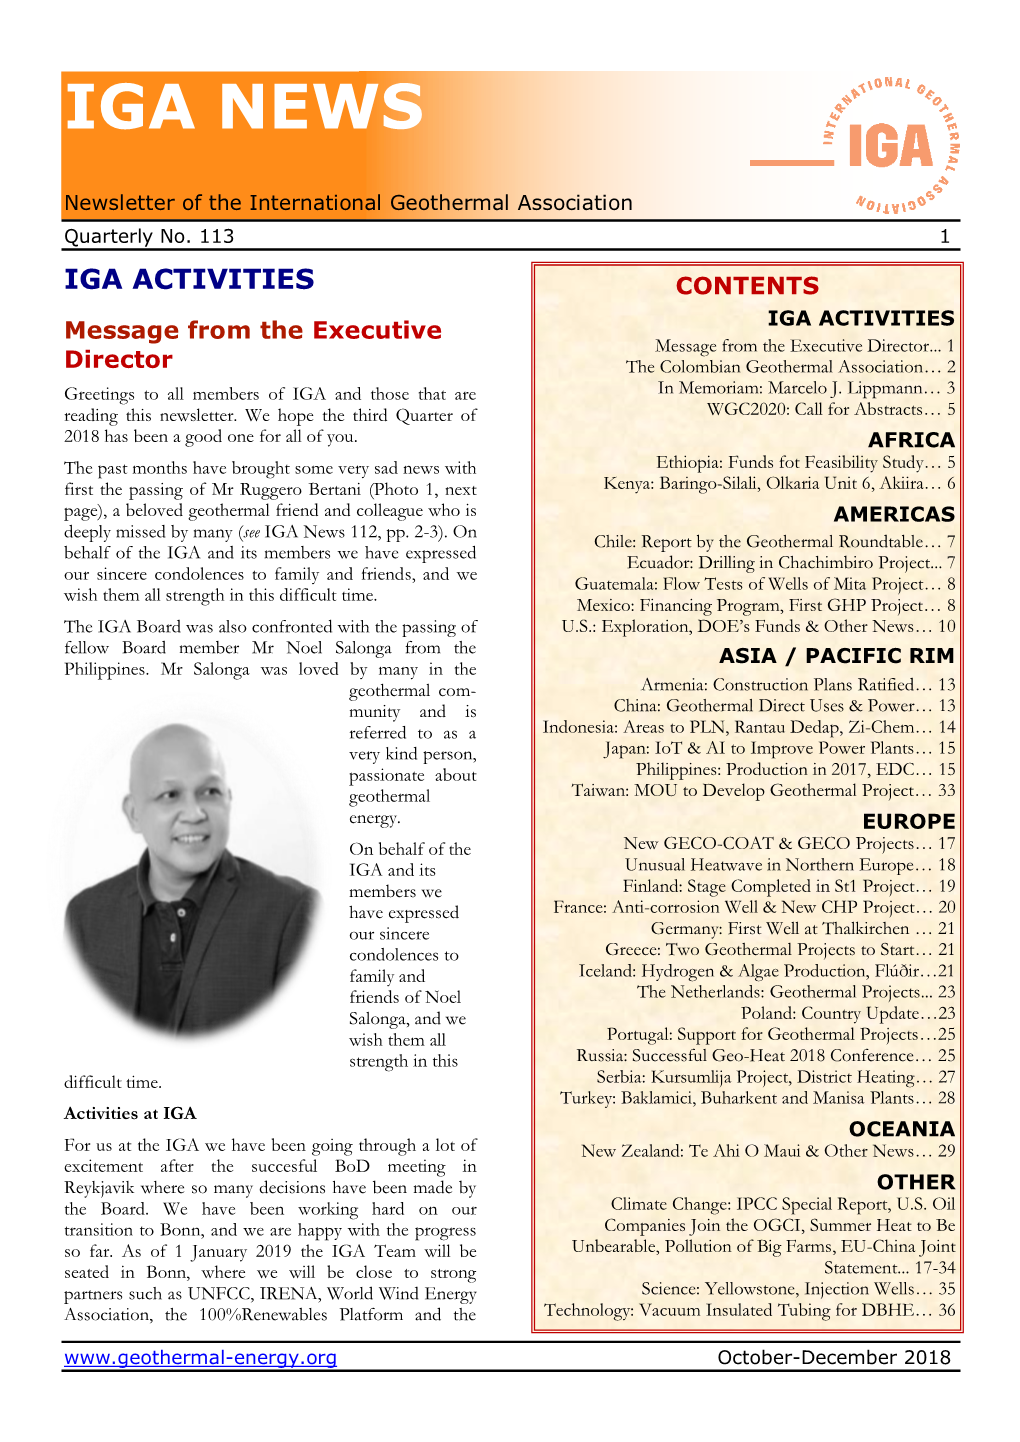 IGA News No. 92